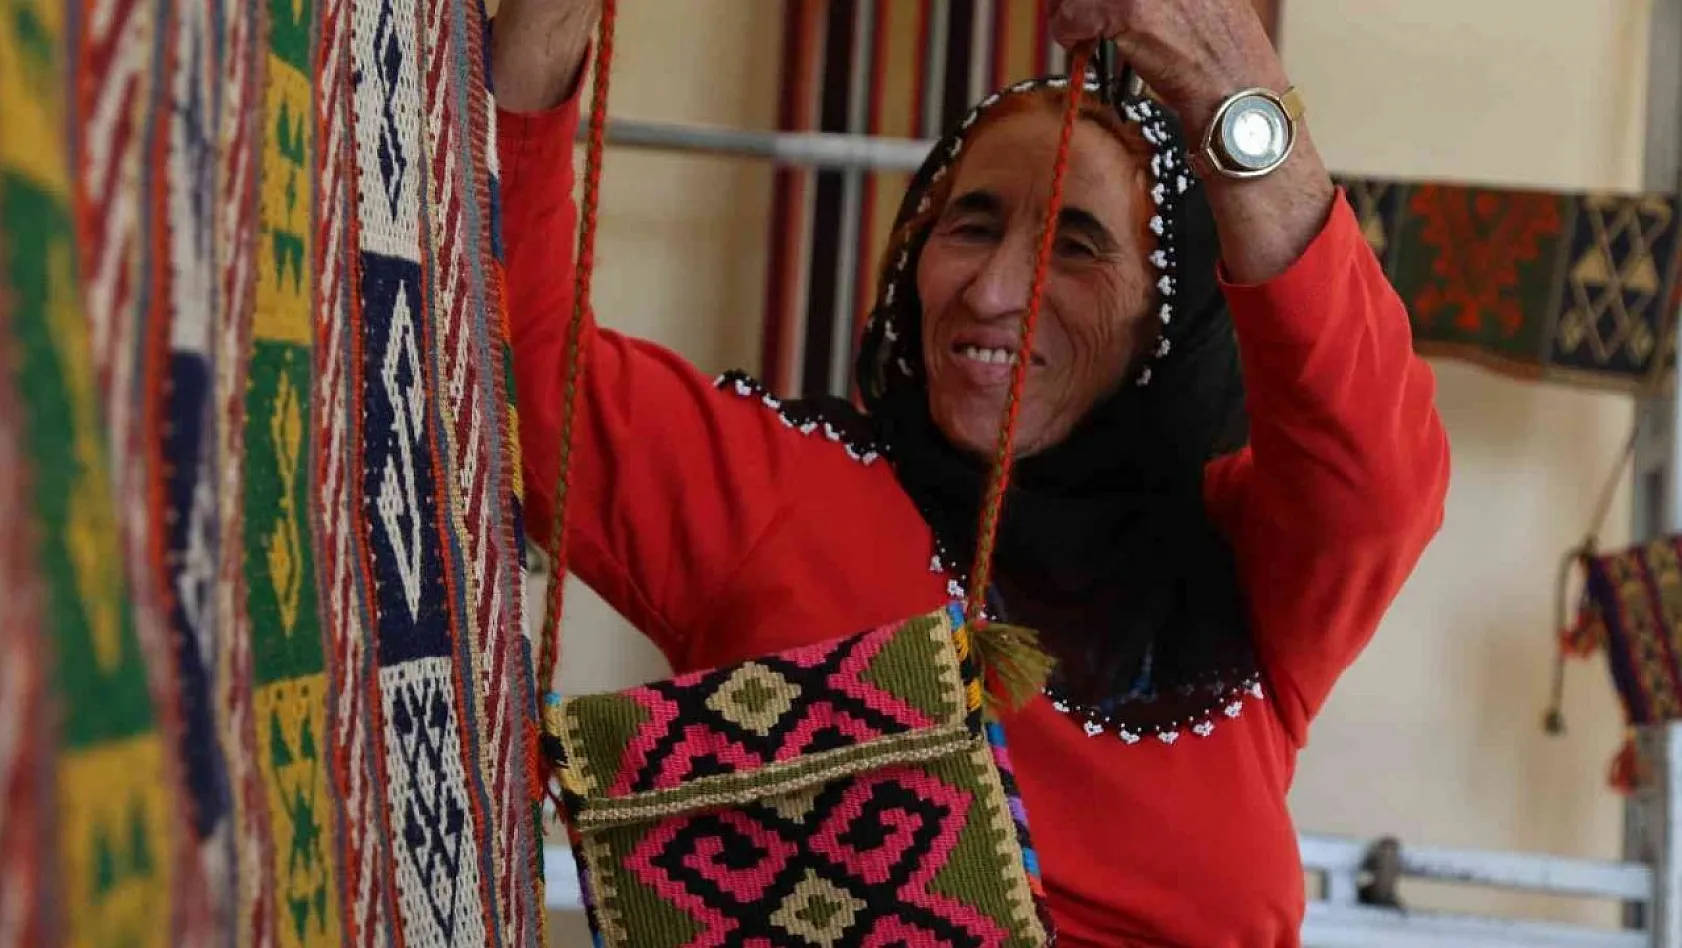 Tunceli'nin en önemli kültürel eseri 'cacim', 76 yaşındaki Zerican ninenin elinde hayat buluyor